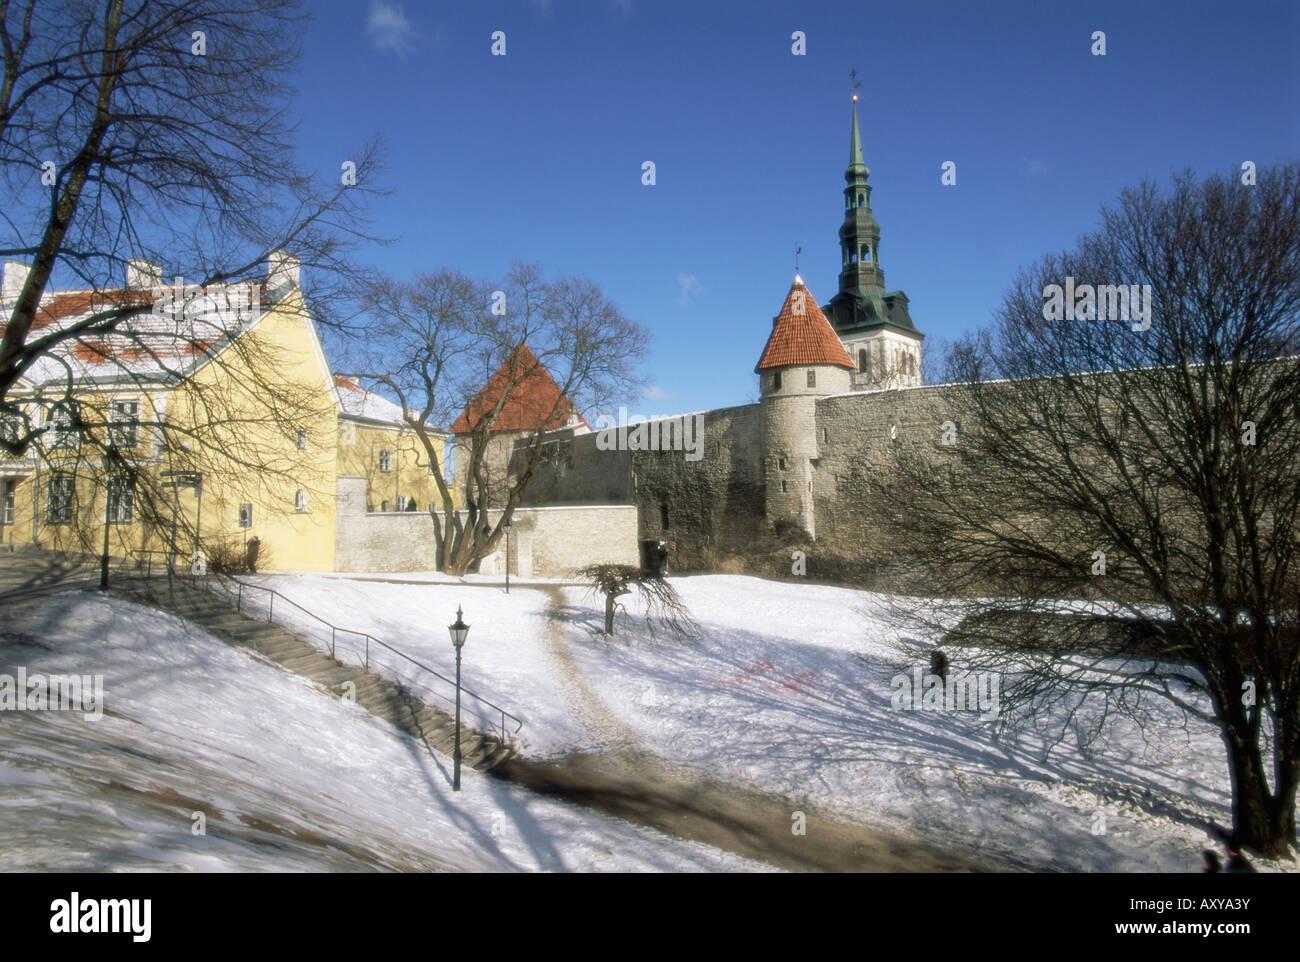 Die Altstadt im Winter, Tallinn, UNESCO World Heritage Site, Estland, Baltikum, Europa Stockfoto